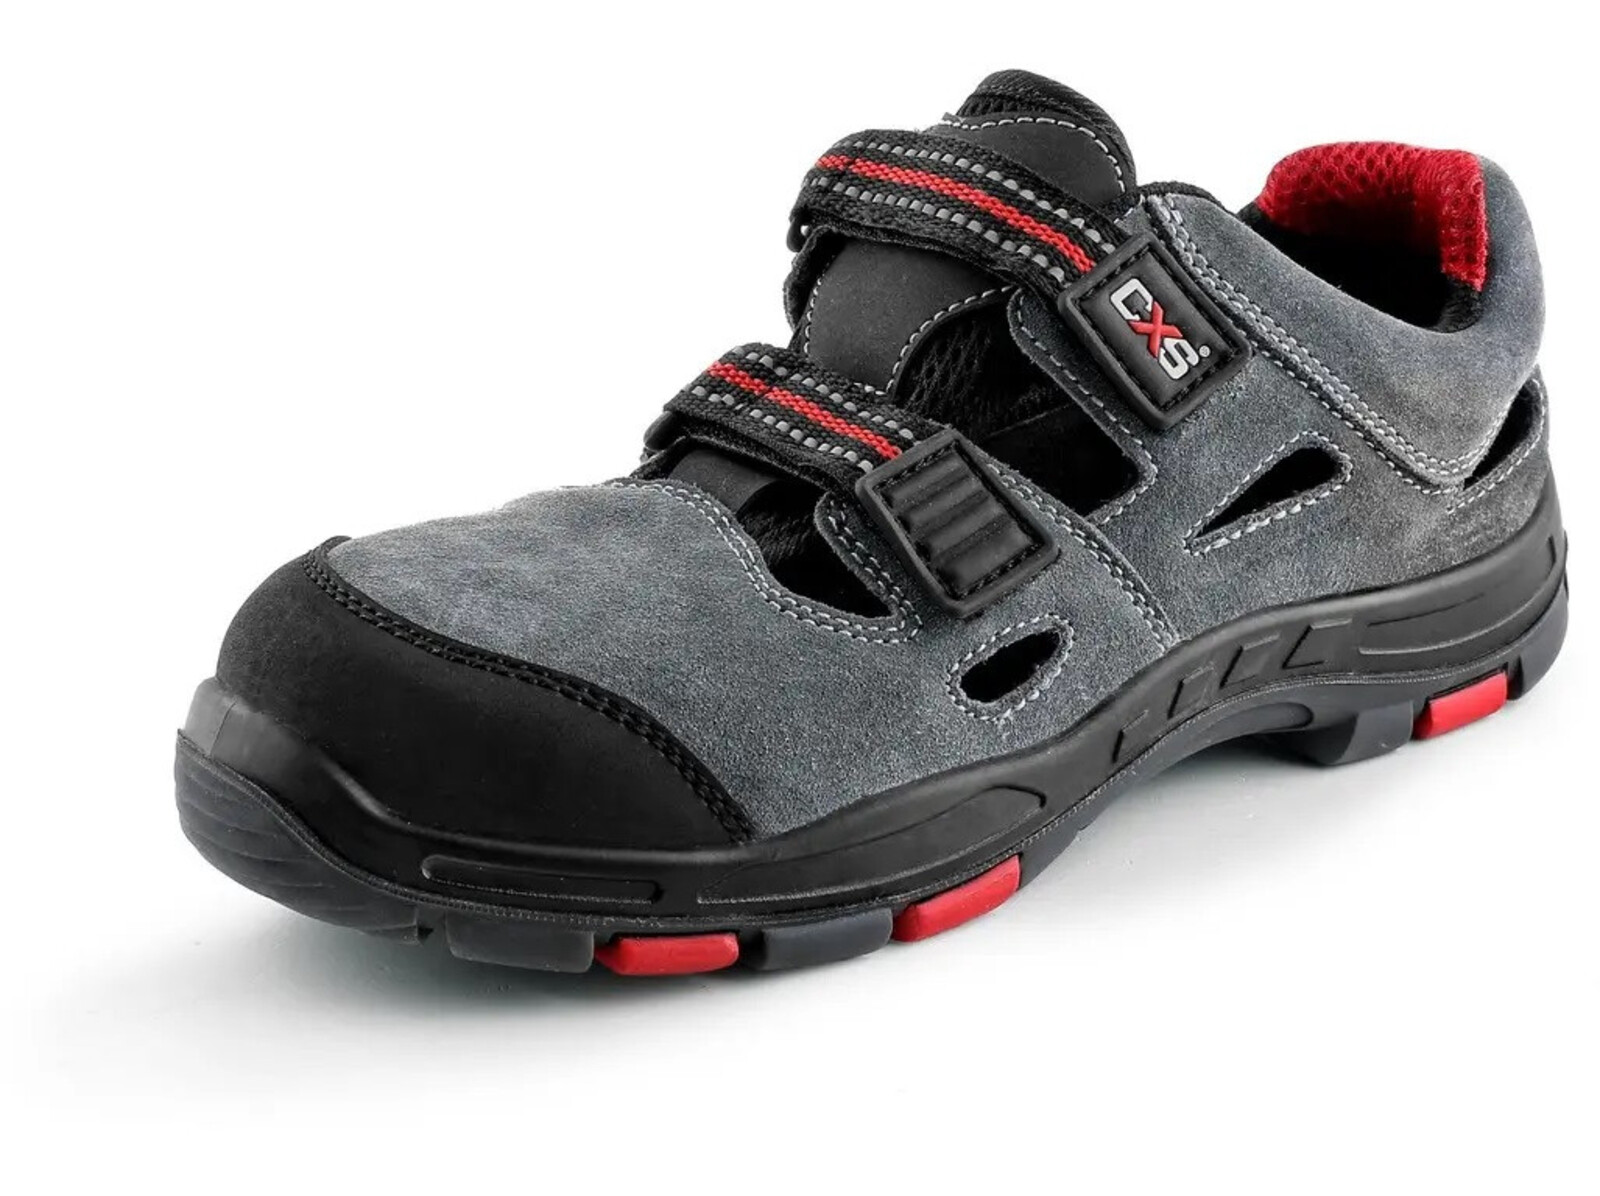 Pracovné sandále CXS Rock Phyllite O1 FO HRO SRA MF - veľkosť: 37, farba: sivá/červená